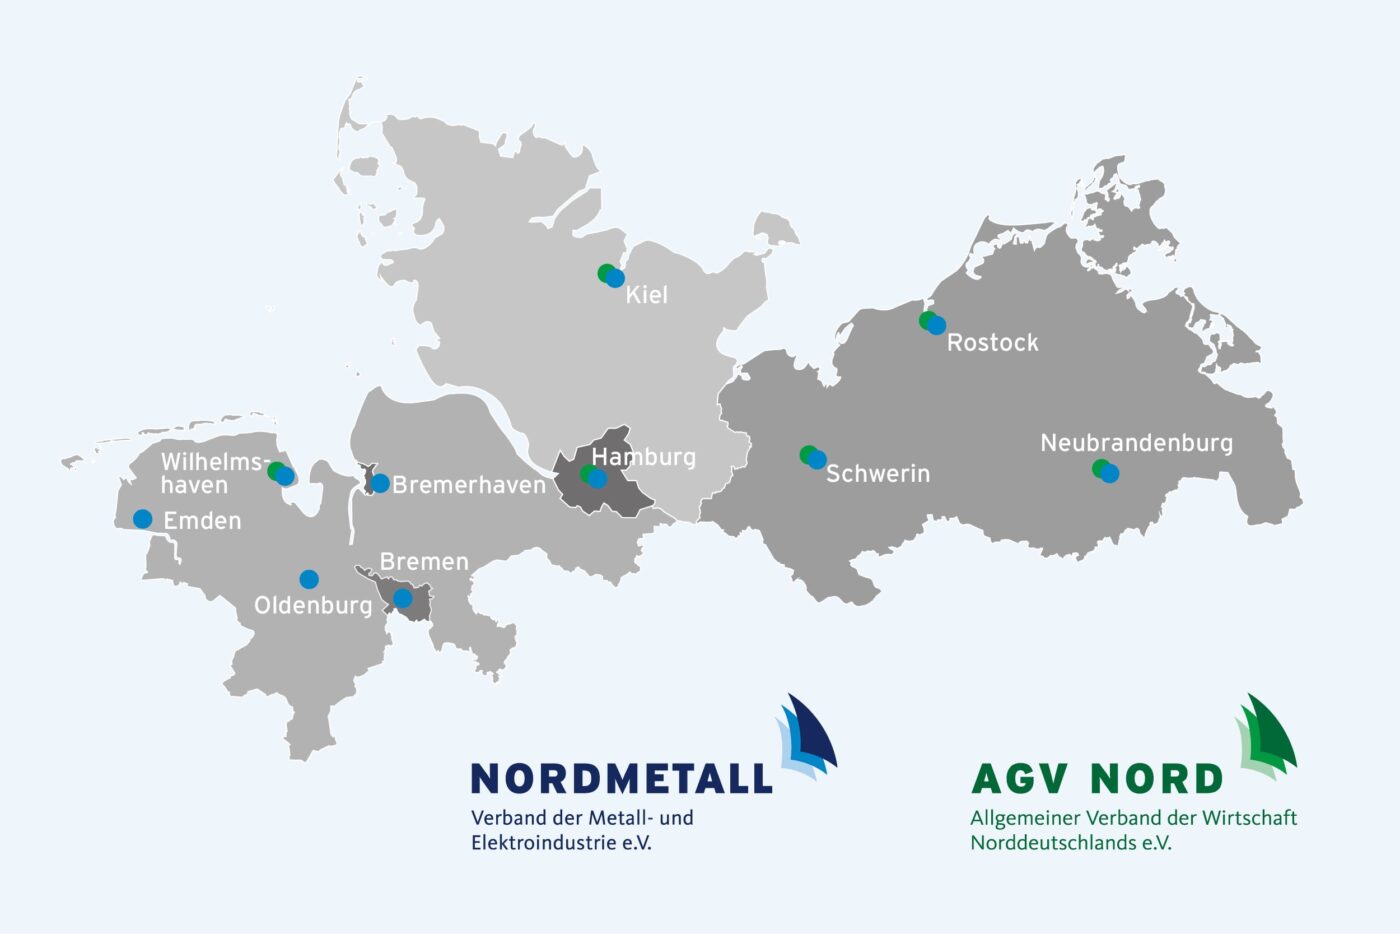 Nordmetall_AGV Nord_Newsroom